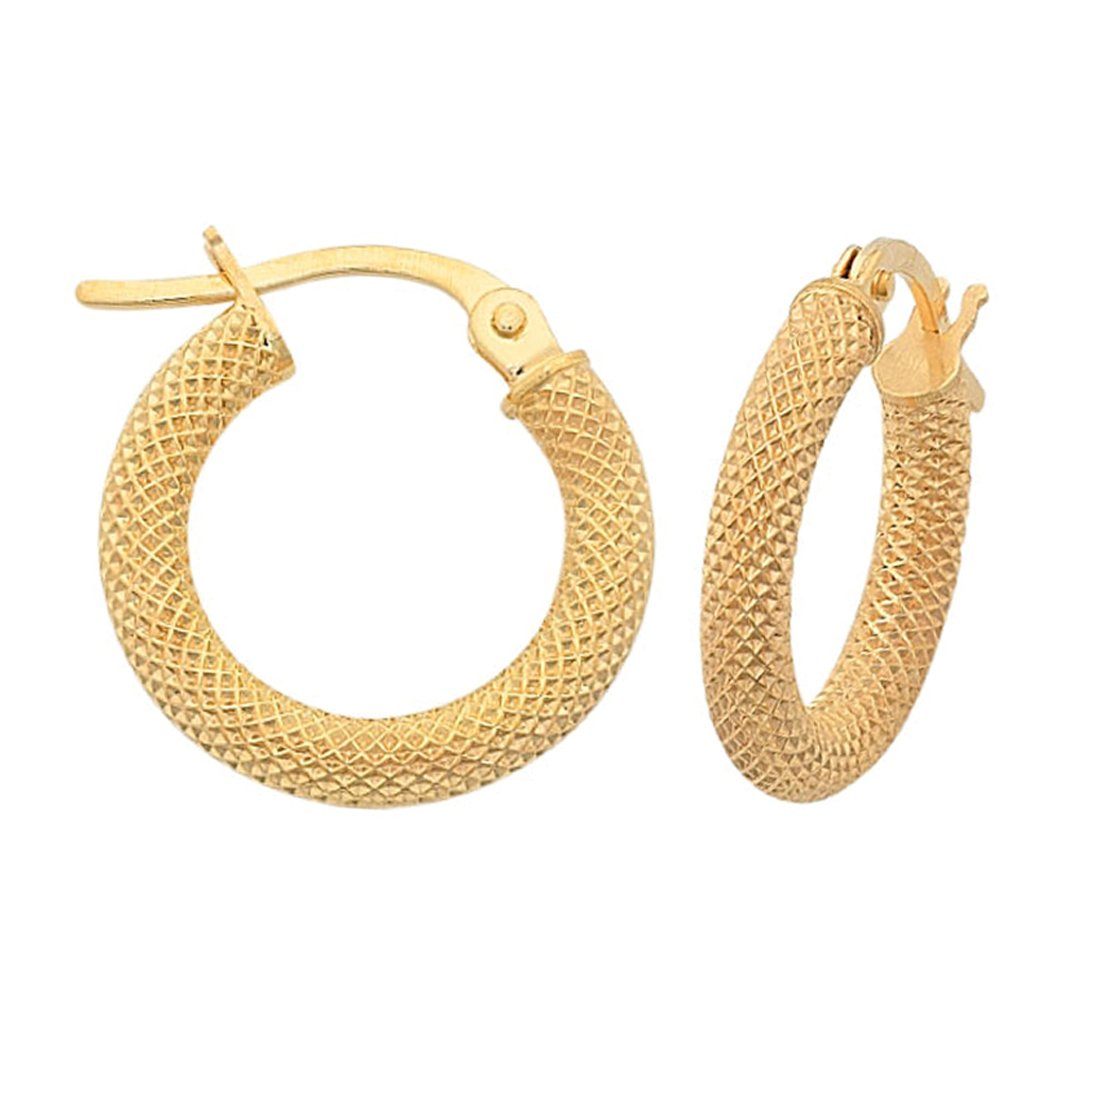 Fancy Mesh 10mm Hoop Earrings in 9ct Yellow Gold Earrings Bevilles 